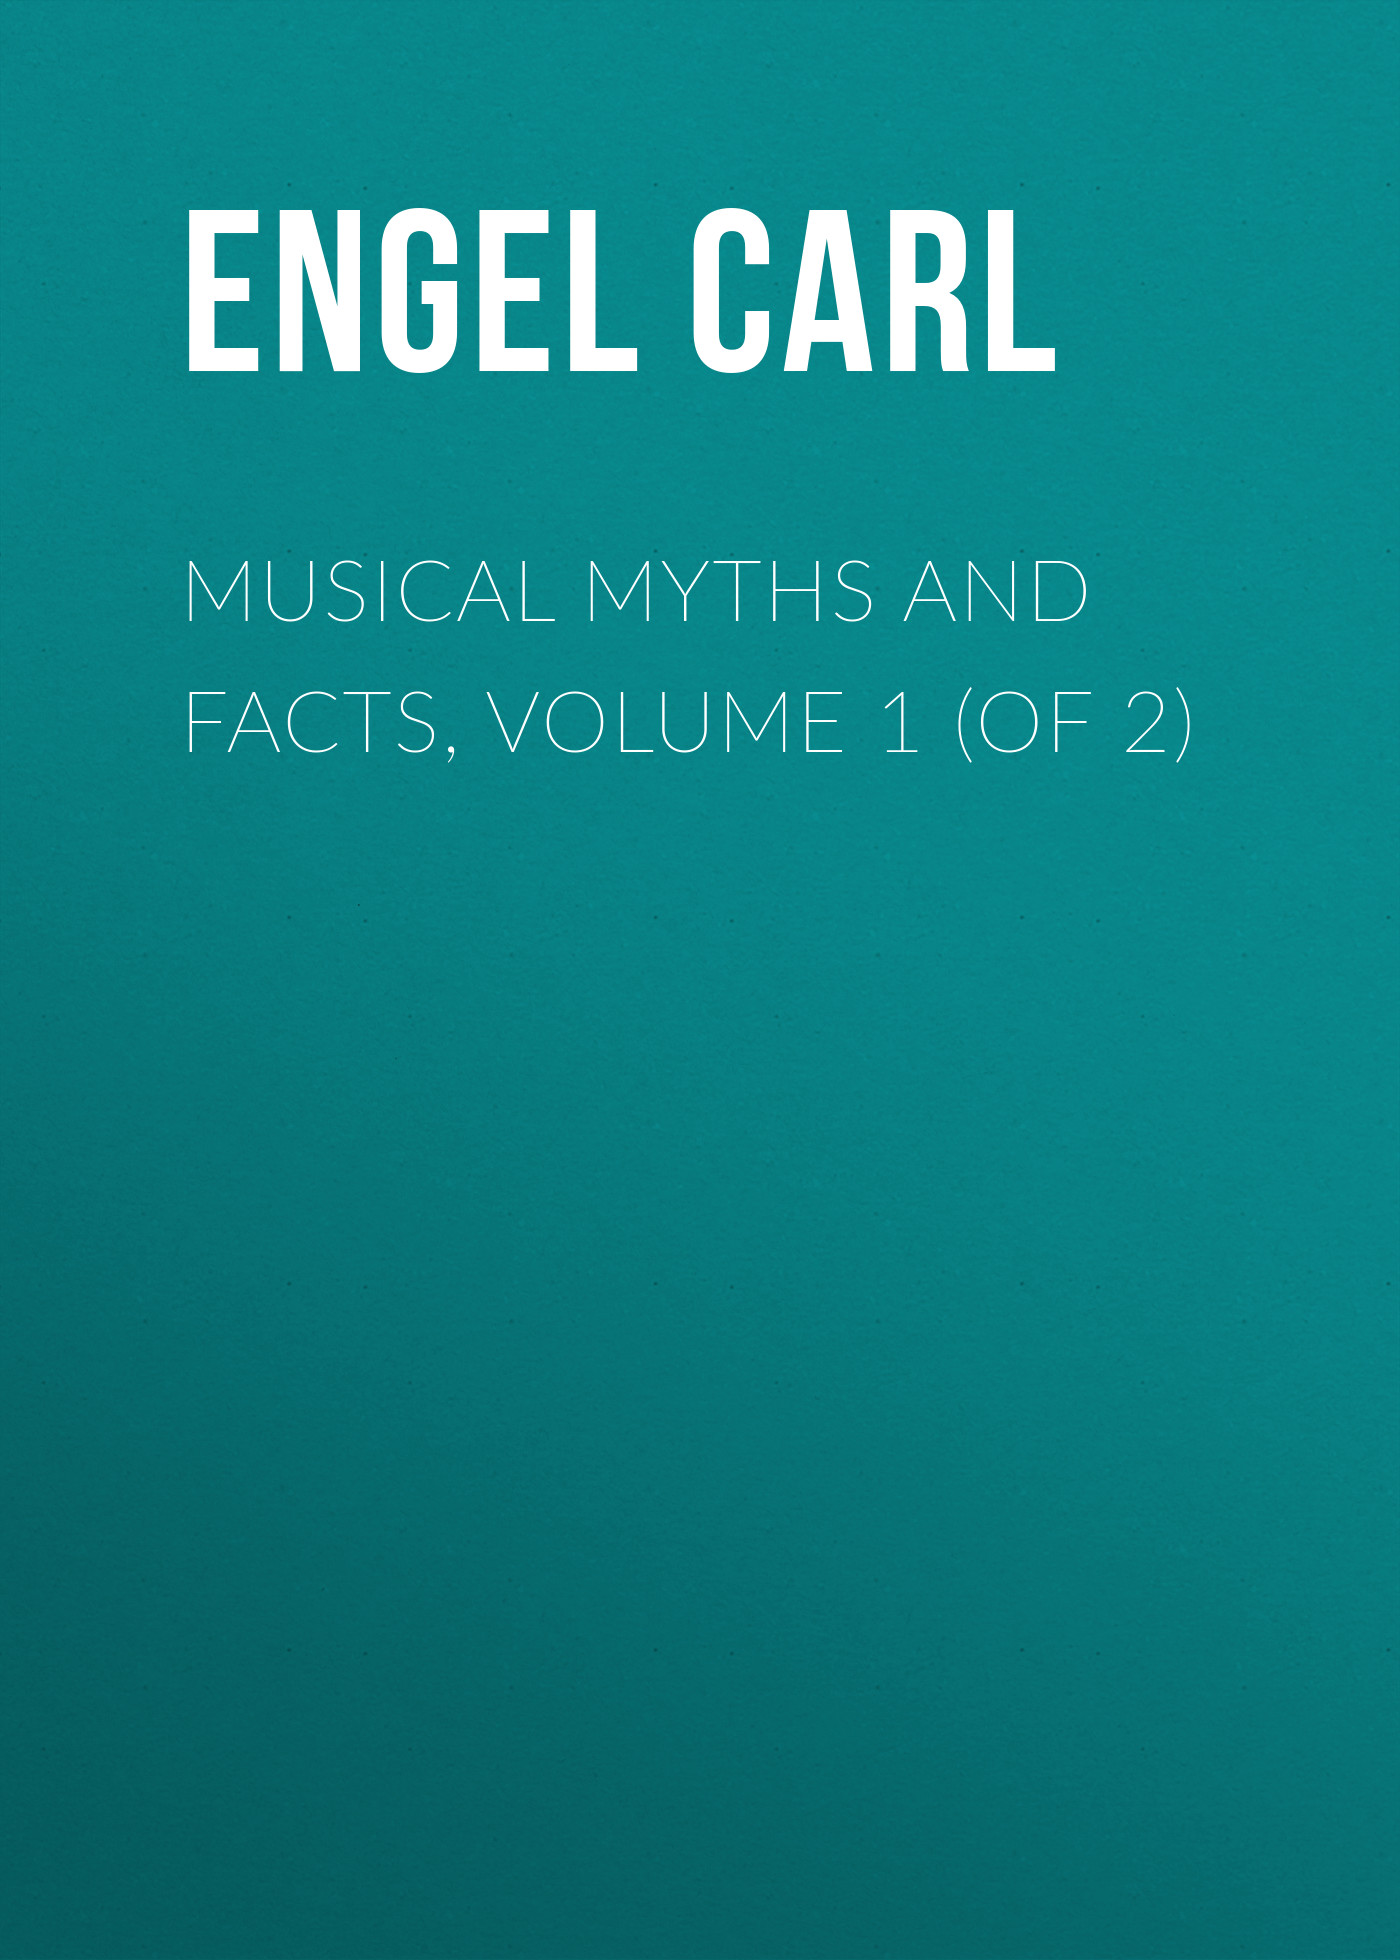 Книга Musical Myths and Facts, Volume 1 (of 2) из серии , созданная Carl Engel, может относится к жанру Музыка, балет, Зарубежная старинная литература, Зарубежная классика. Стоимость книги Musical Myths and Facts, Volume 1 (of 2)  с идентификатором 24712969 составляет 0 руб.